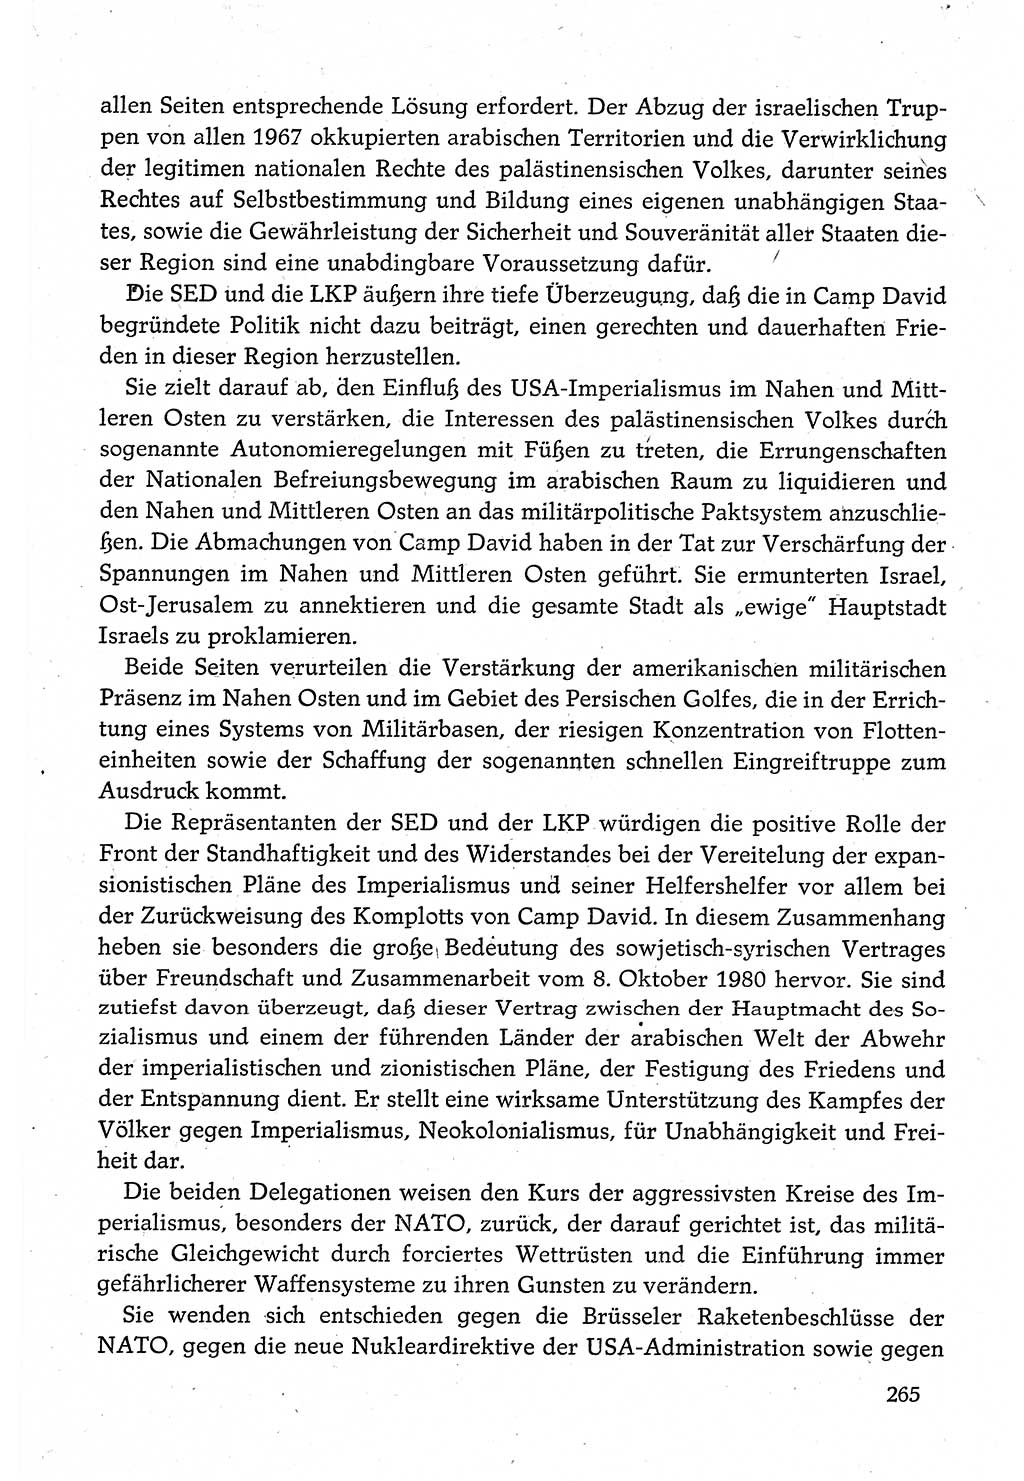 Dokumente der Sozialistischen Einheitspartei Deutschlands (SED) [Deutsche Demokratische Republik (DDR)] 1980-1981, Seite 265 (Dok. SED DDR 1980-1981, S. 265)